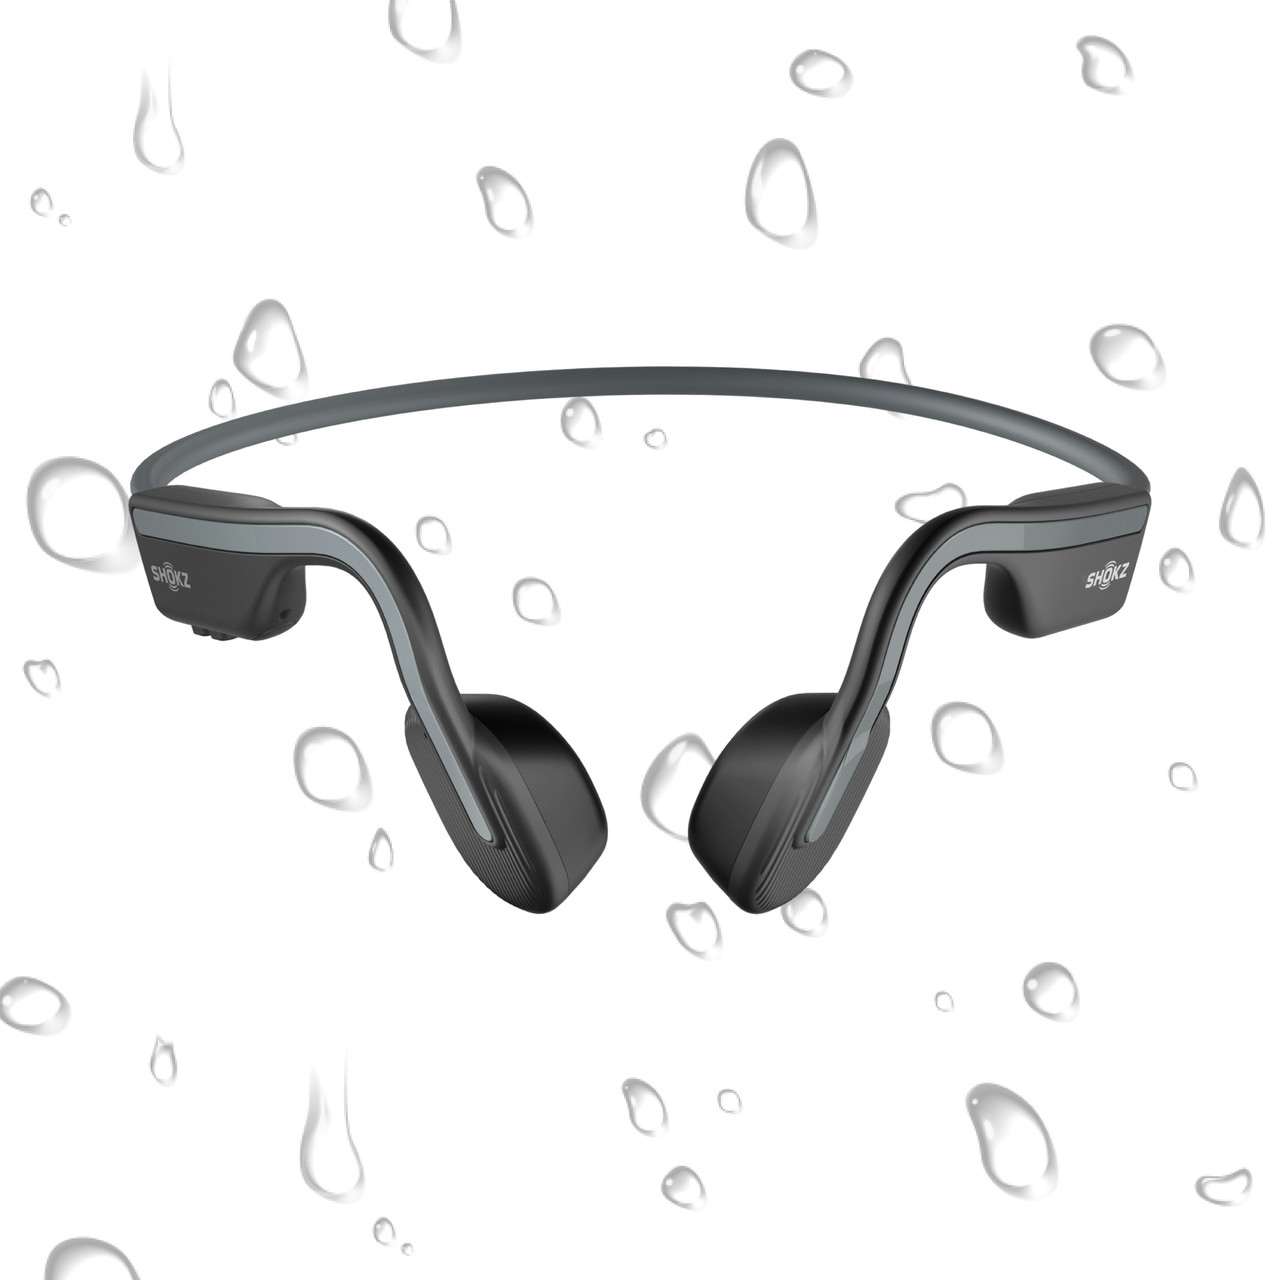 OpenMove Headphones Grey